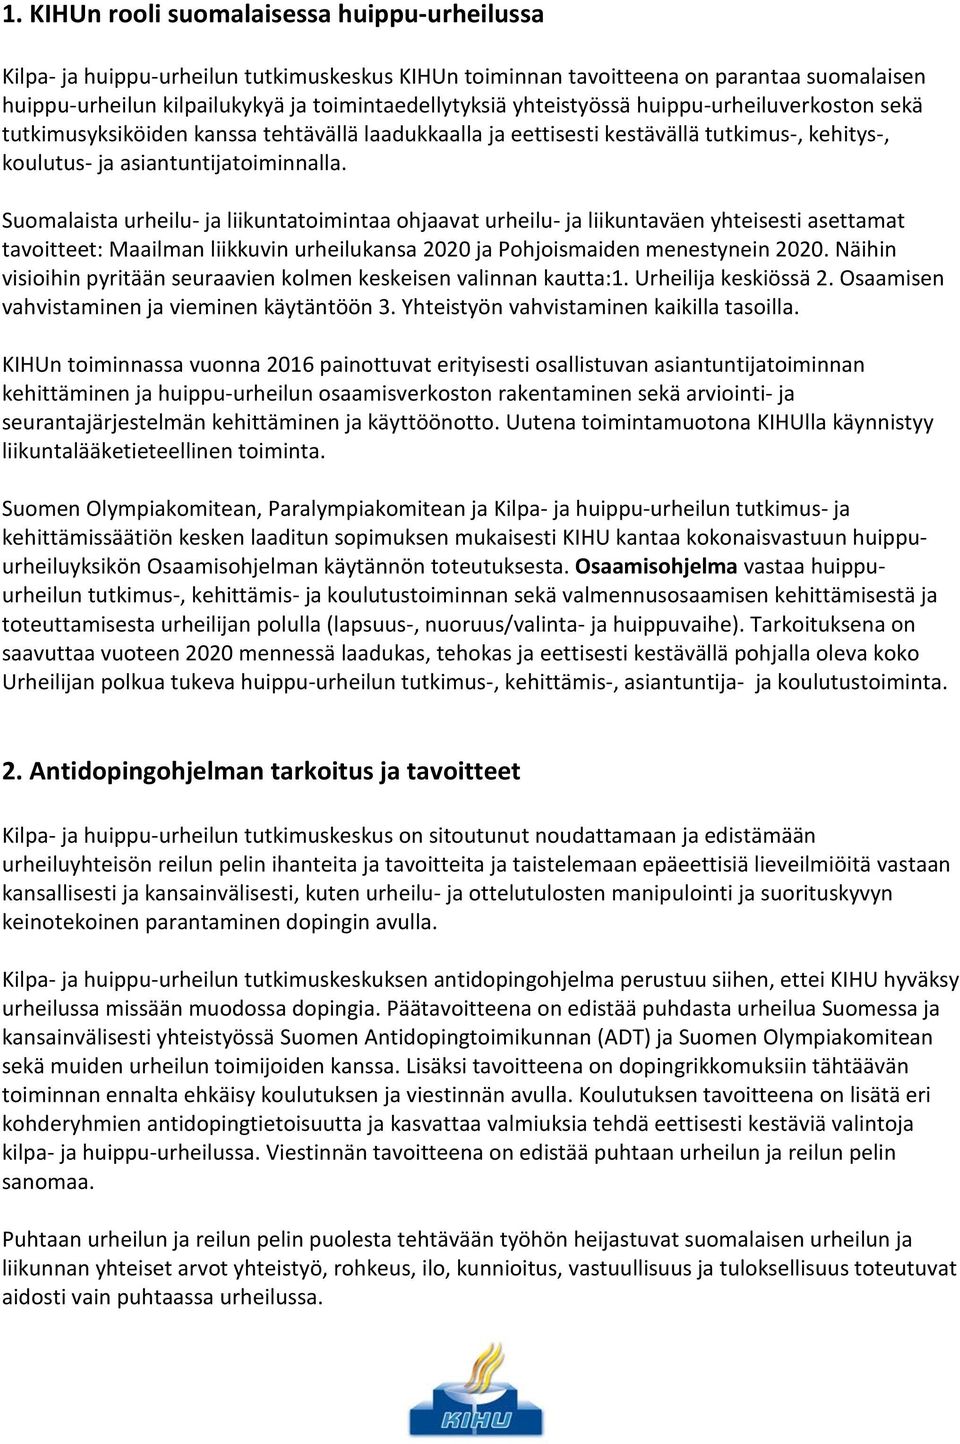 Suomalaista urheilu- ja liikuntatoimintaa ohjaavat urheilu- ja liikuntaväen yhteisesti asettamat tavoitteet: Maailman liikkuvin urheilukansa 2020 ja Pohjoismaiden menestynein 2020.